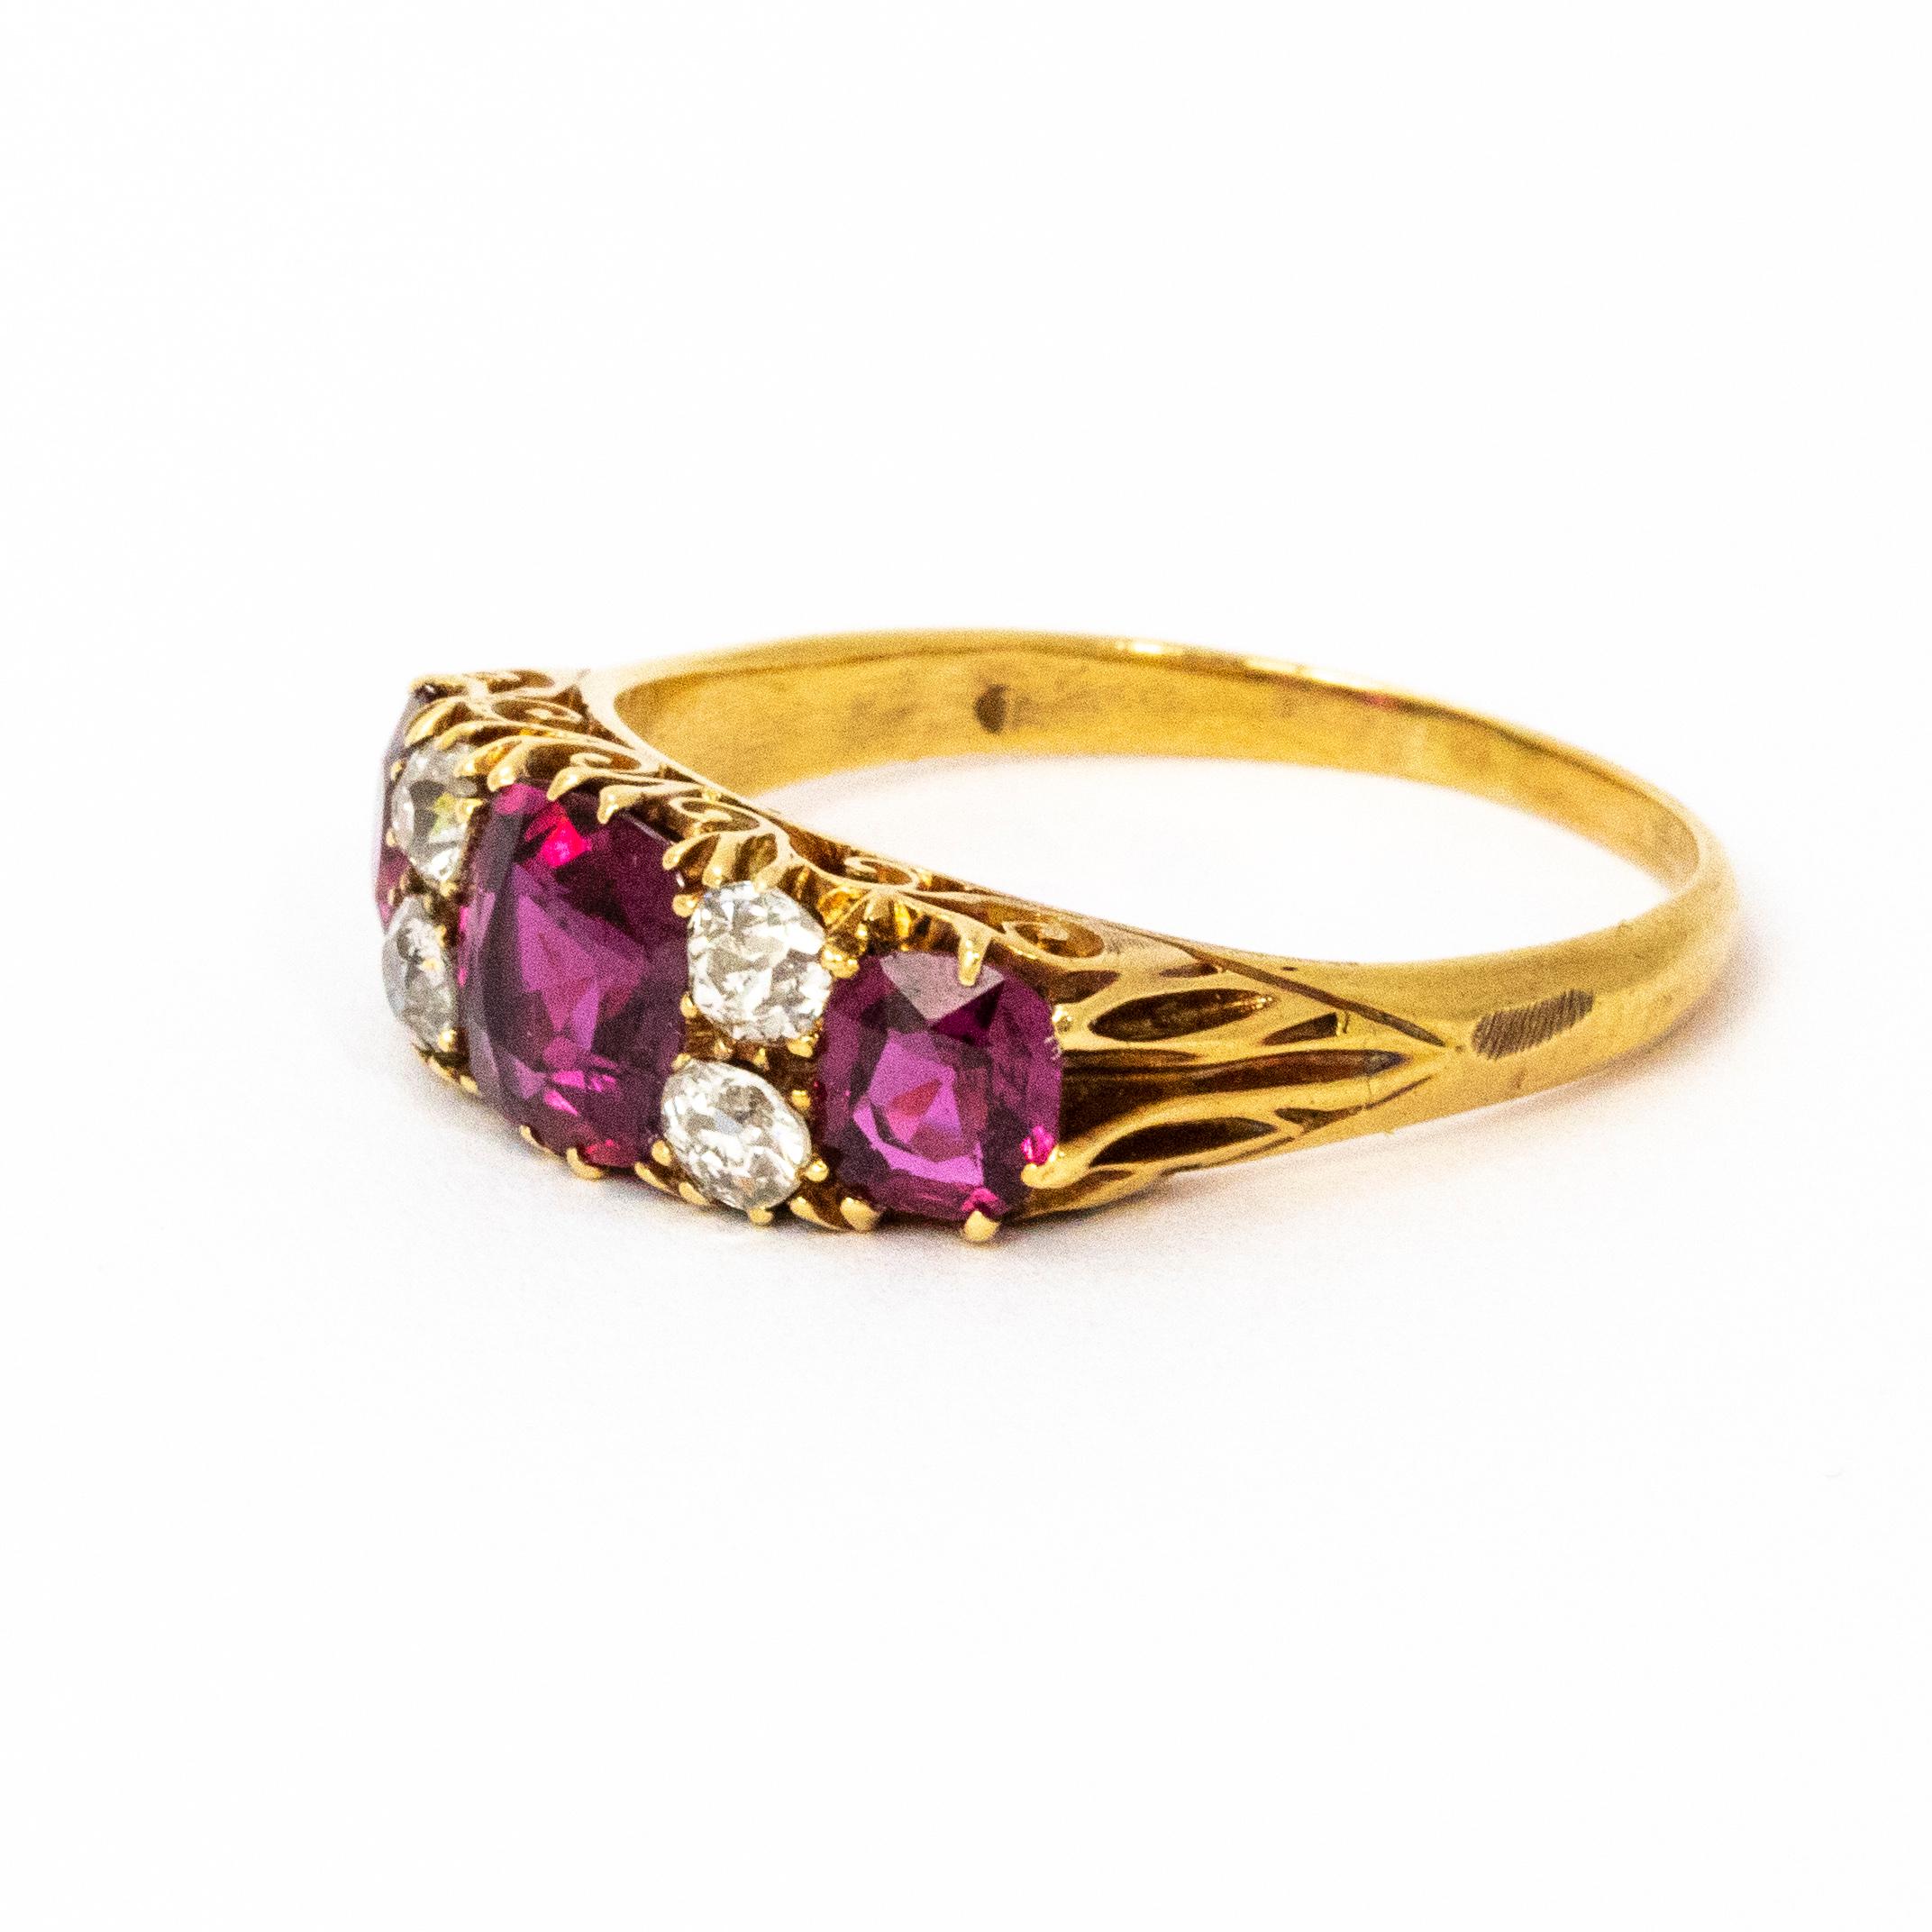 Zertifizierter schillernder Ring mit natürlichem Rubin und Diamanten, wunderschön in 18-karätigem Gold gefasst. Rubine mit einem Gesamtgewicht von 2,30 Karat.

Ringgröße: O oder 7